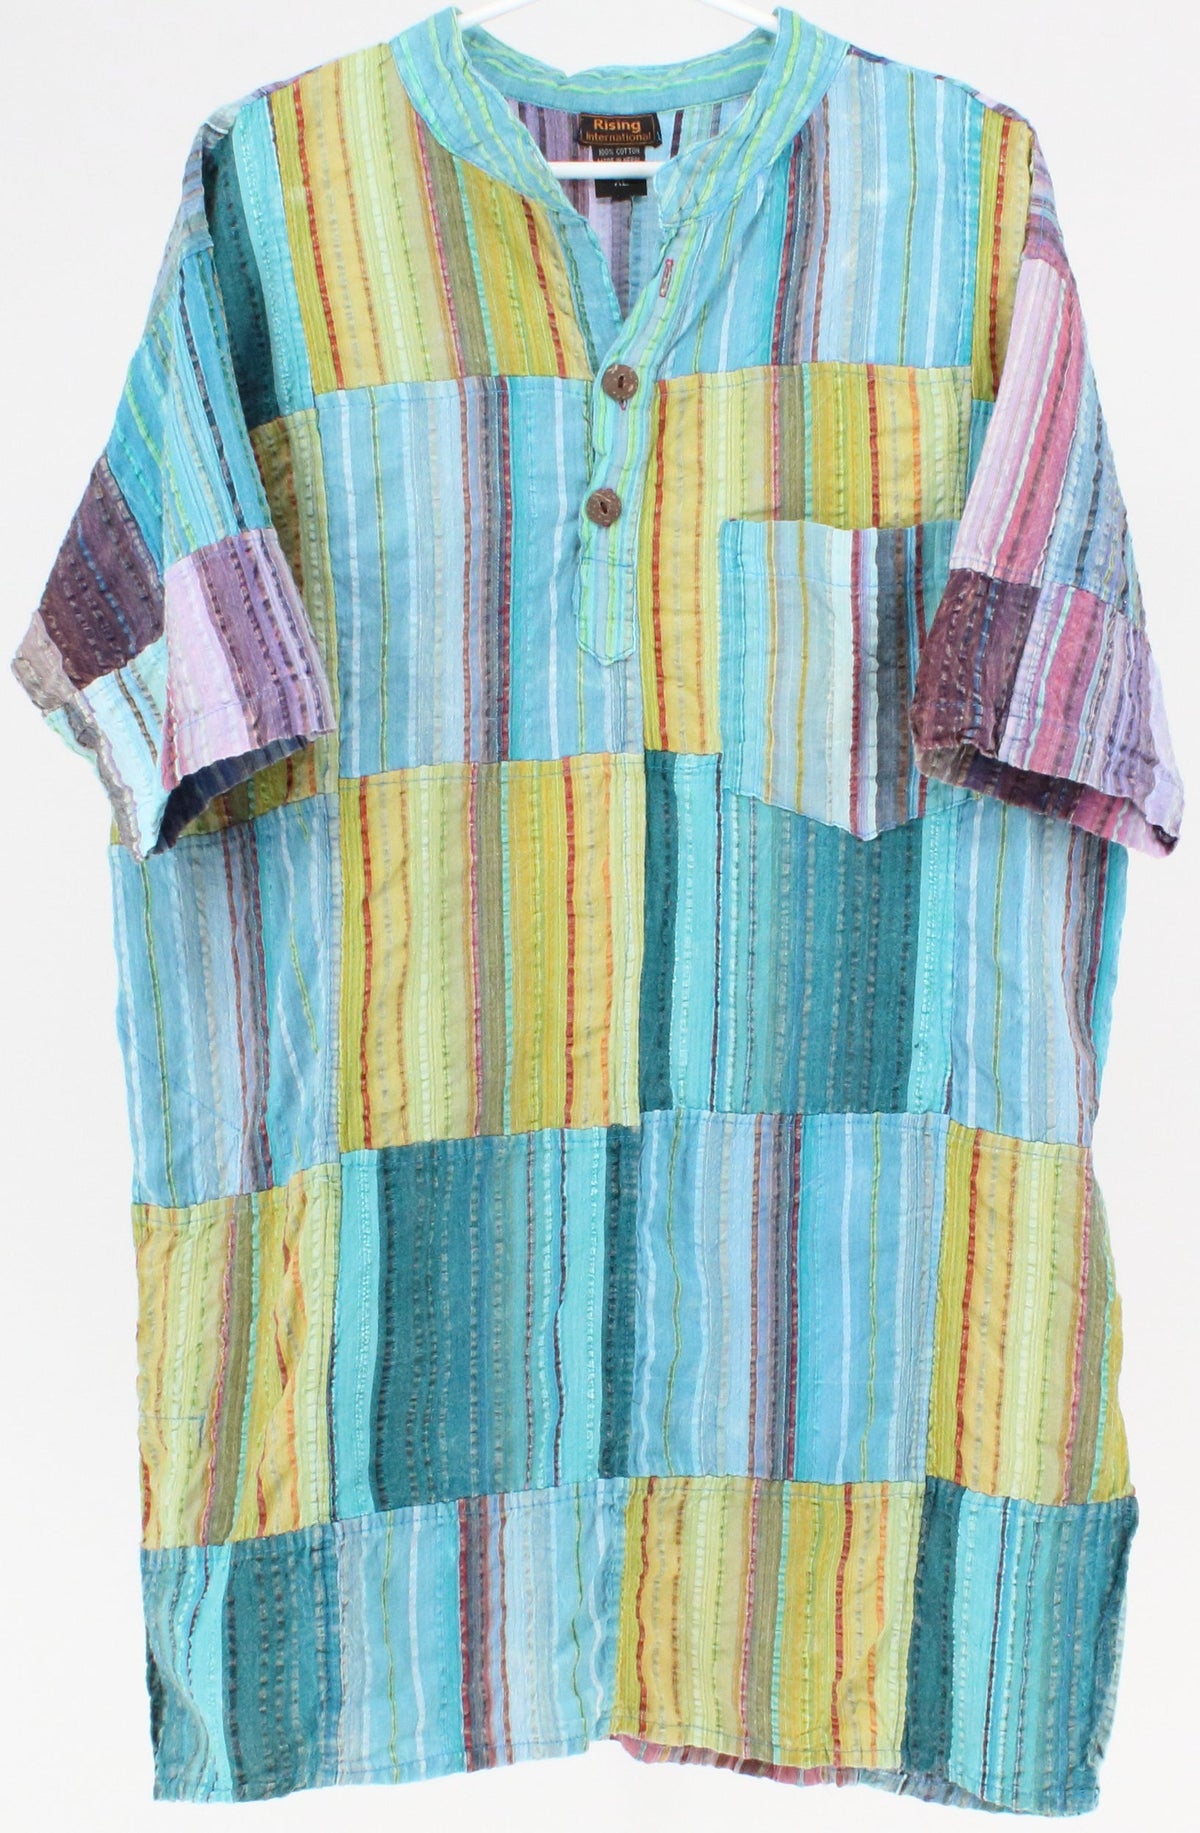 Rising International Multicolor Striped Short Sleeve Shirt